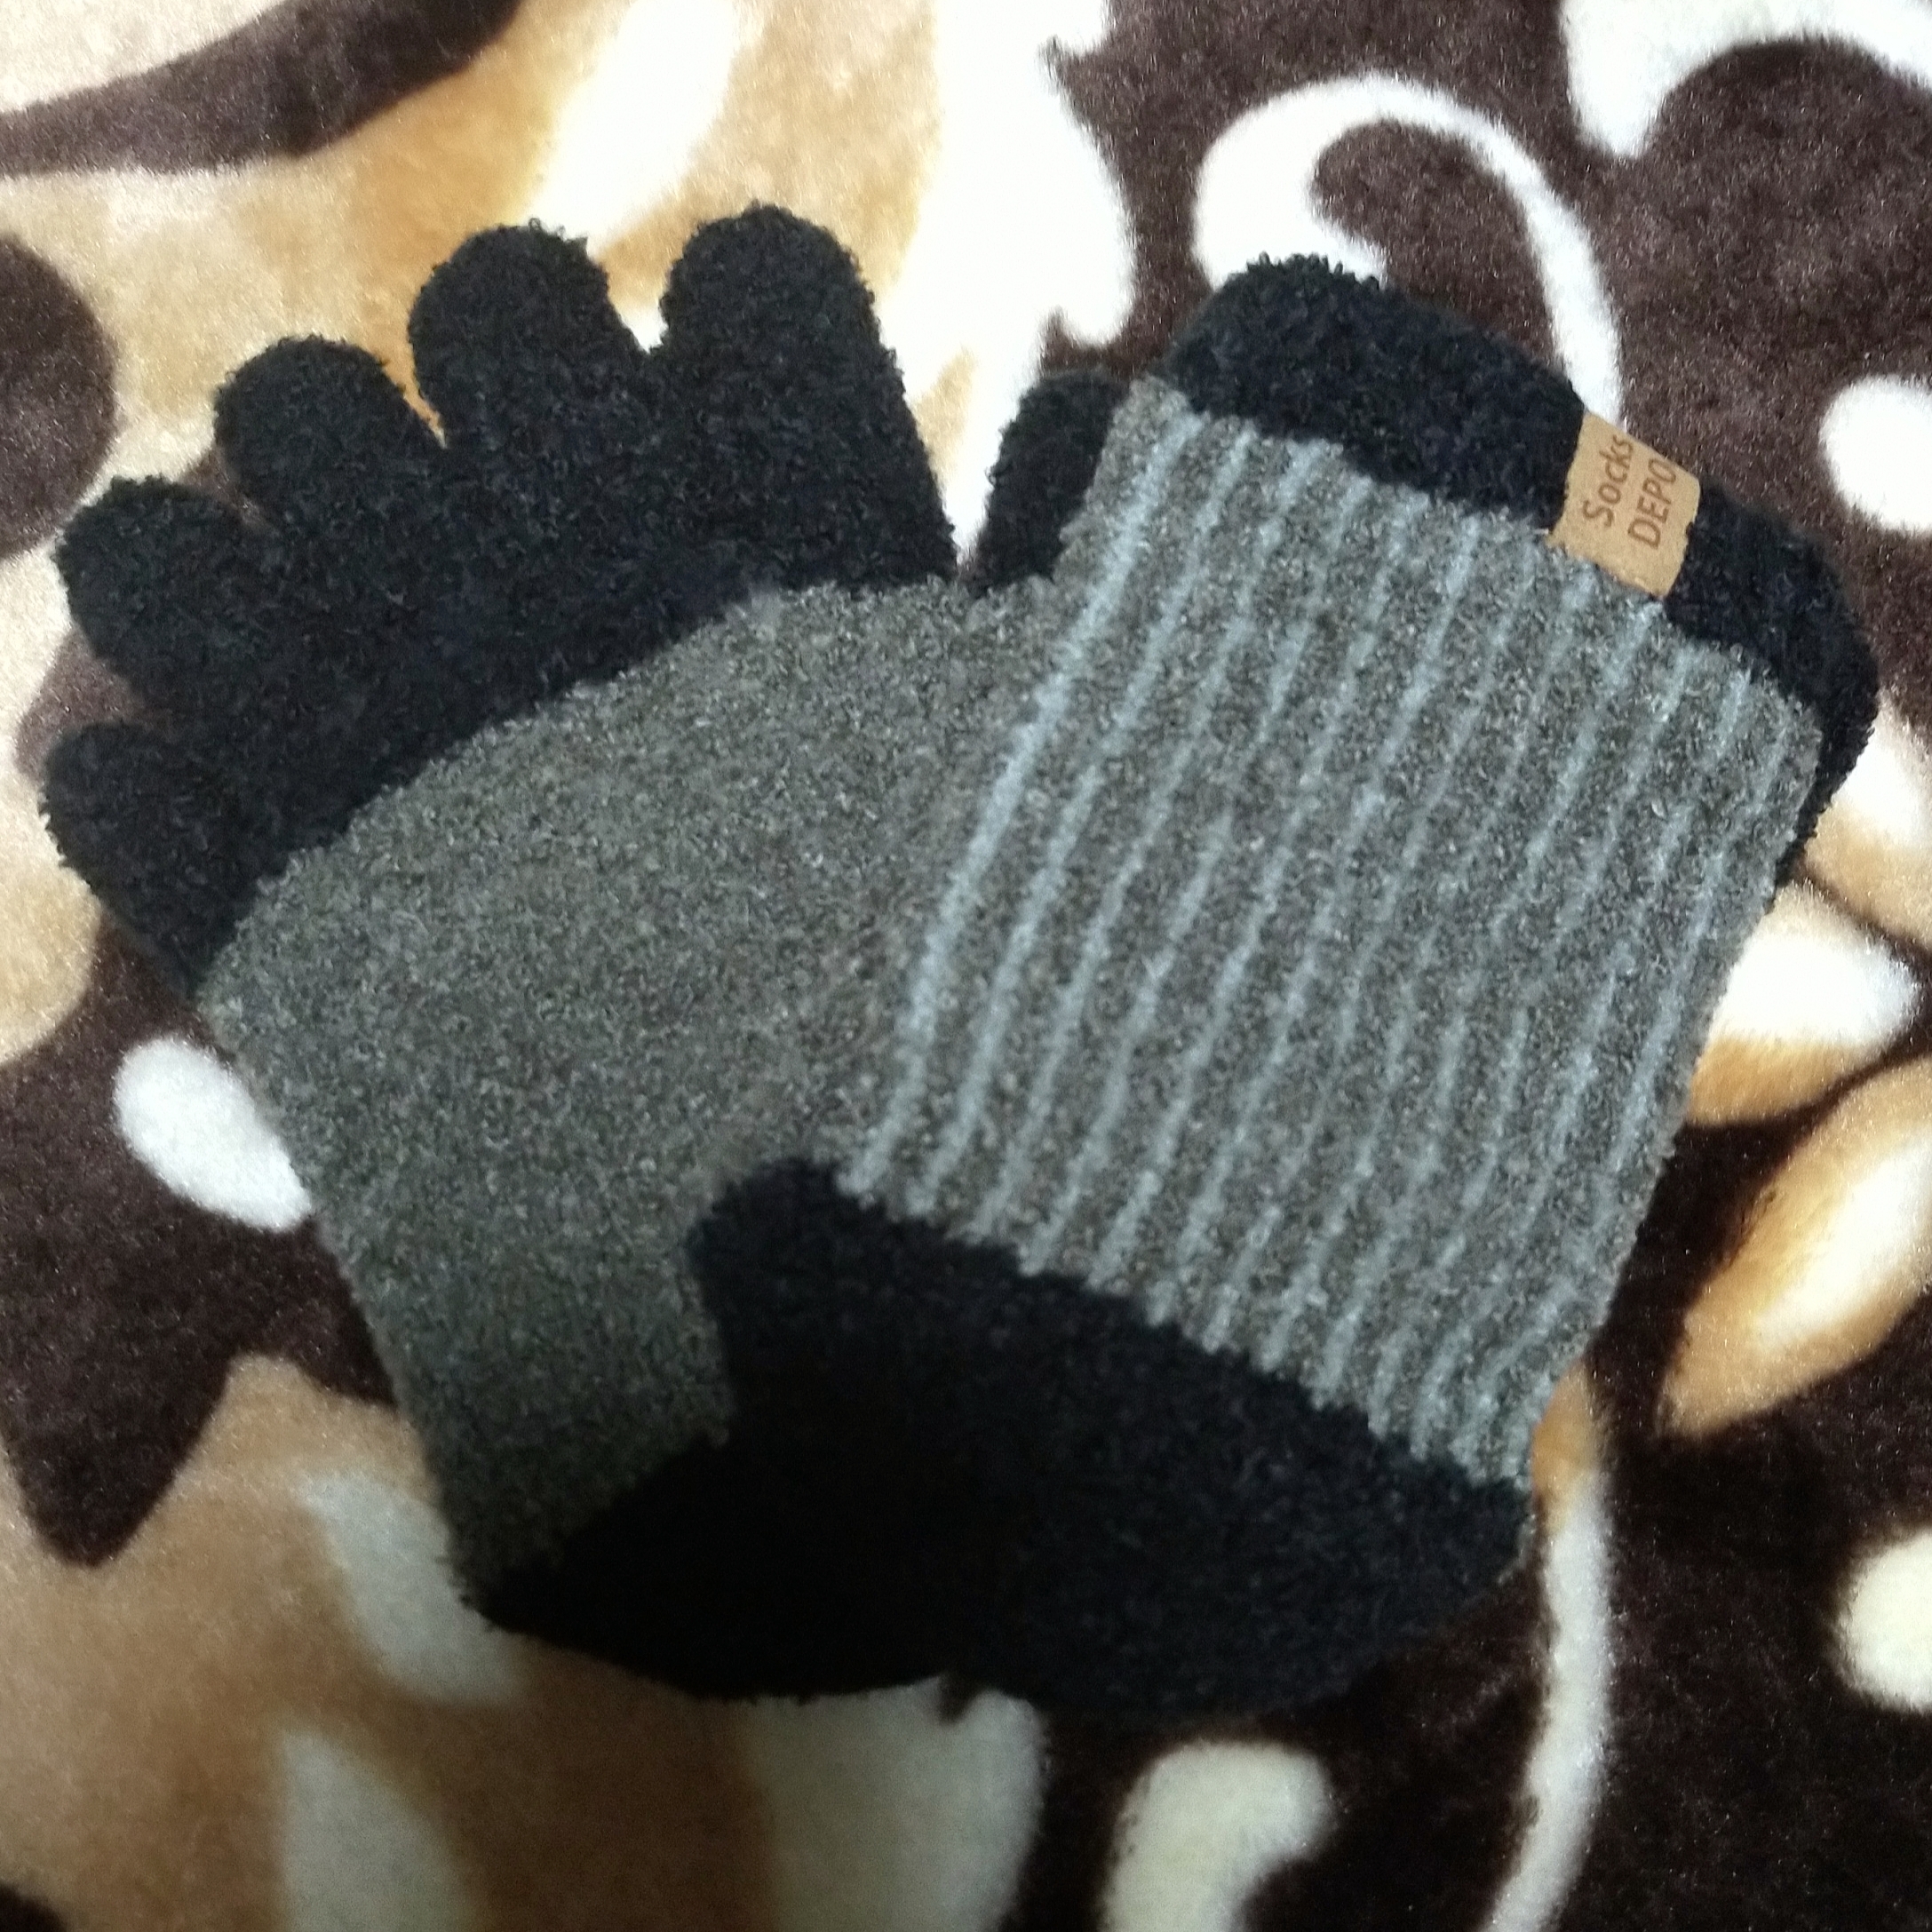 SocksDEPO(そっくすでぽ) てぶくろ屋さんがつくった靴下 モコモコ5本指ソックス ショート丈シングルタイプの良い点・メリットに関するみこさんの口コミ画像1